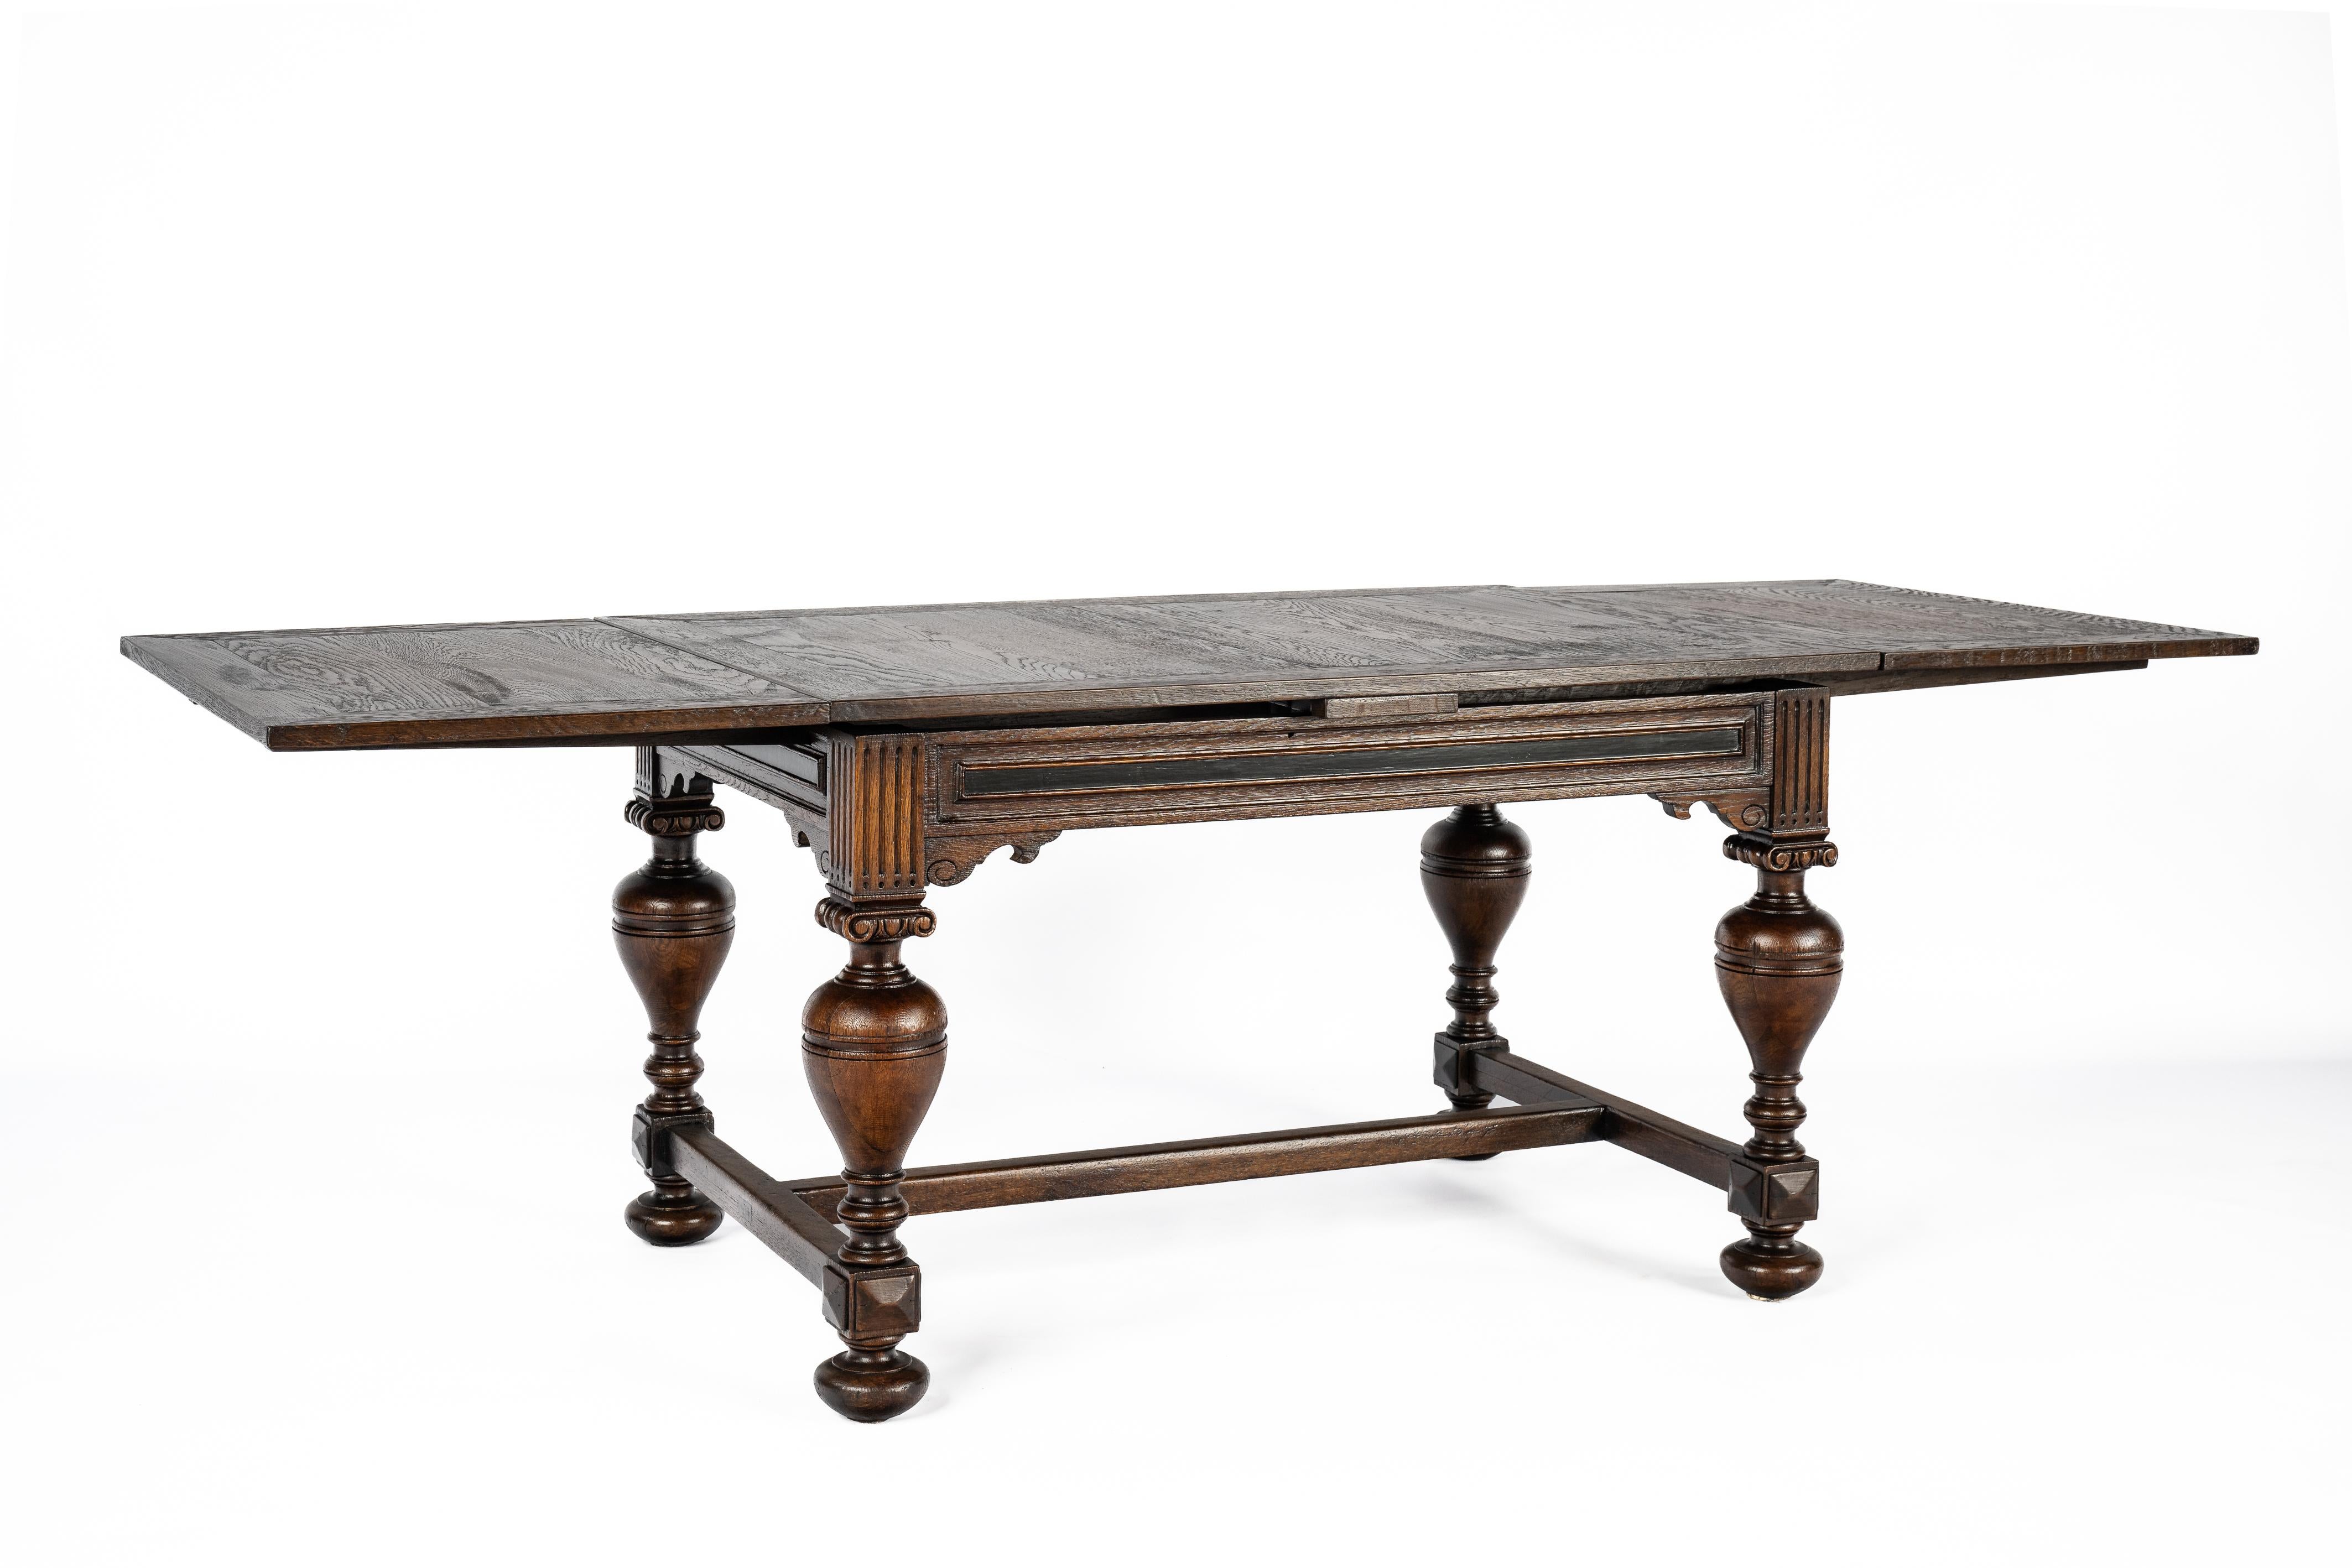 Der hier angebotene Tisch wurde um 1900 in den Niederlanden sorgfältig aus feinster europäischer Sommereiche gefertigt. Dieses exquisite Stück verkörpert die typischen Merkmale eines holländischen Renaissancetisches, dessen Beine mit den